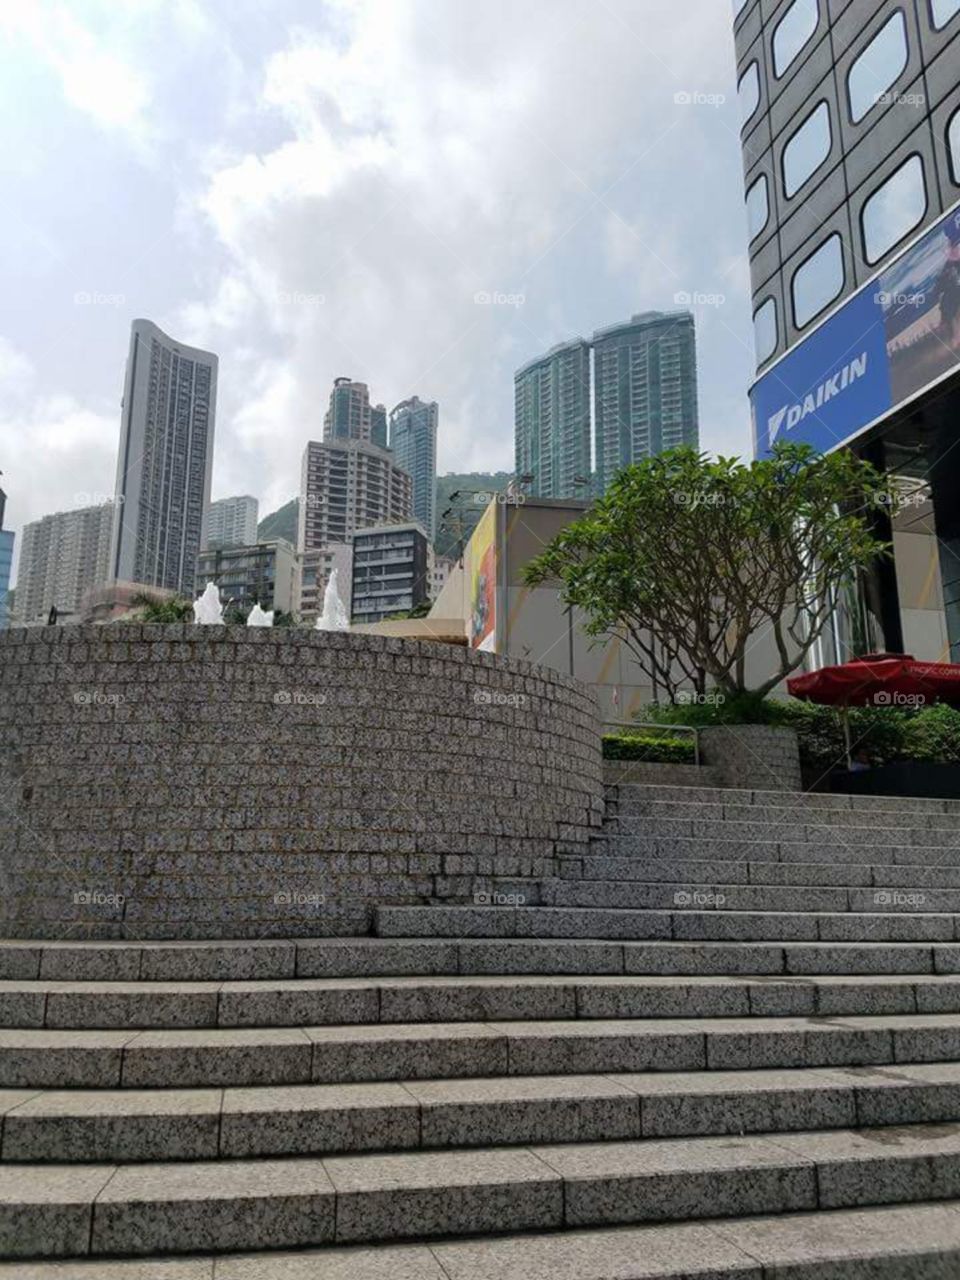 Steps in Hong Kong.